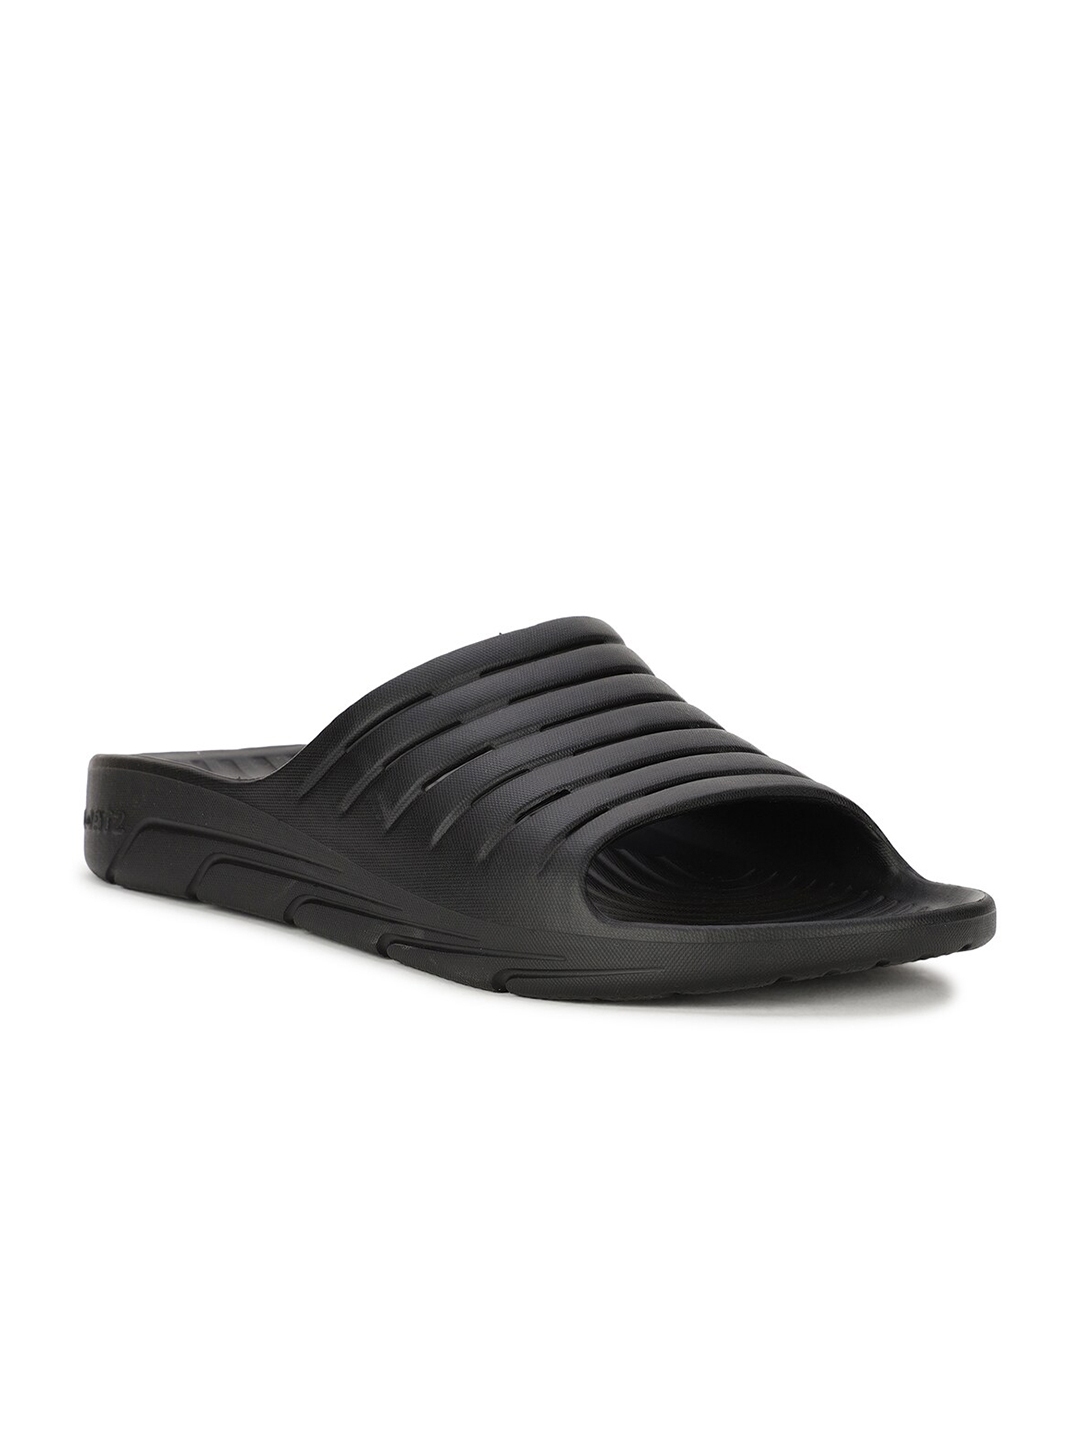 Buy Bata Men Black Sliders - Flip Flops for Men 17003750 | Myntra